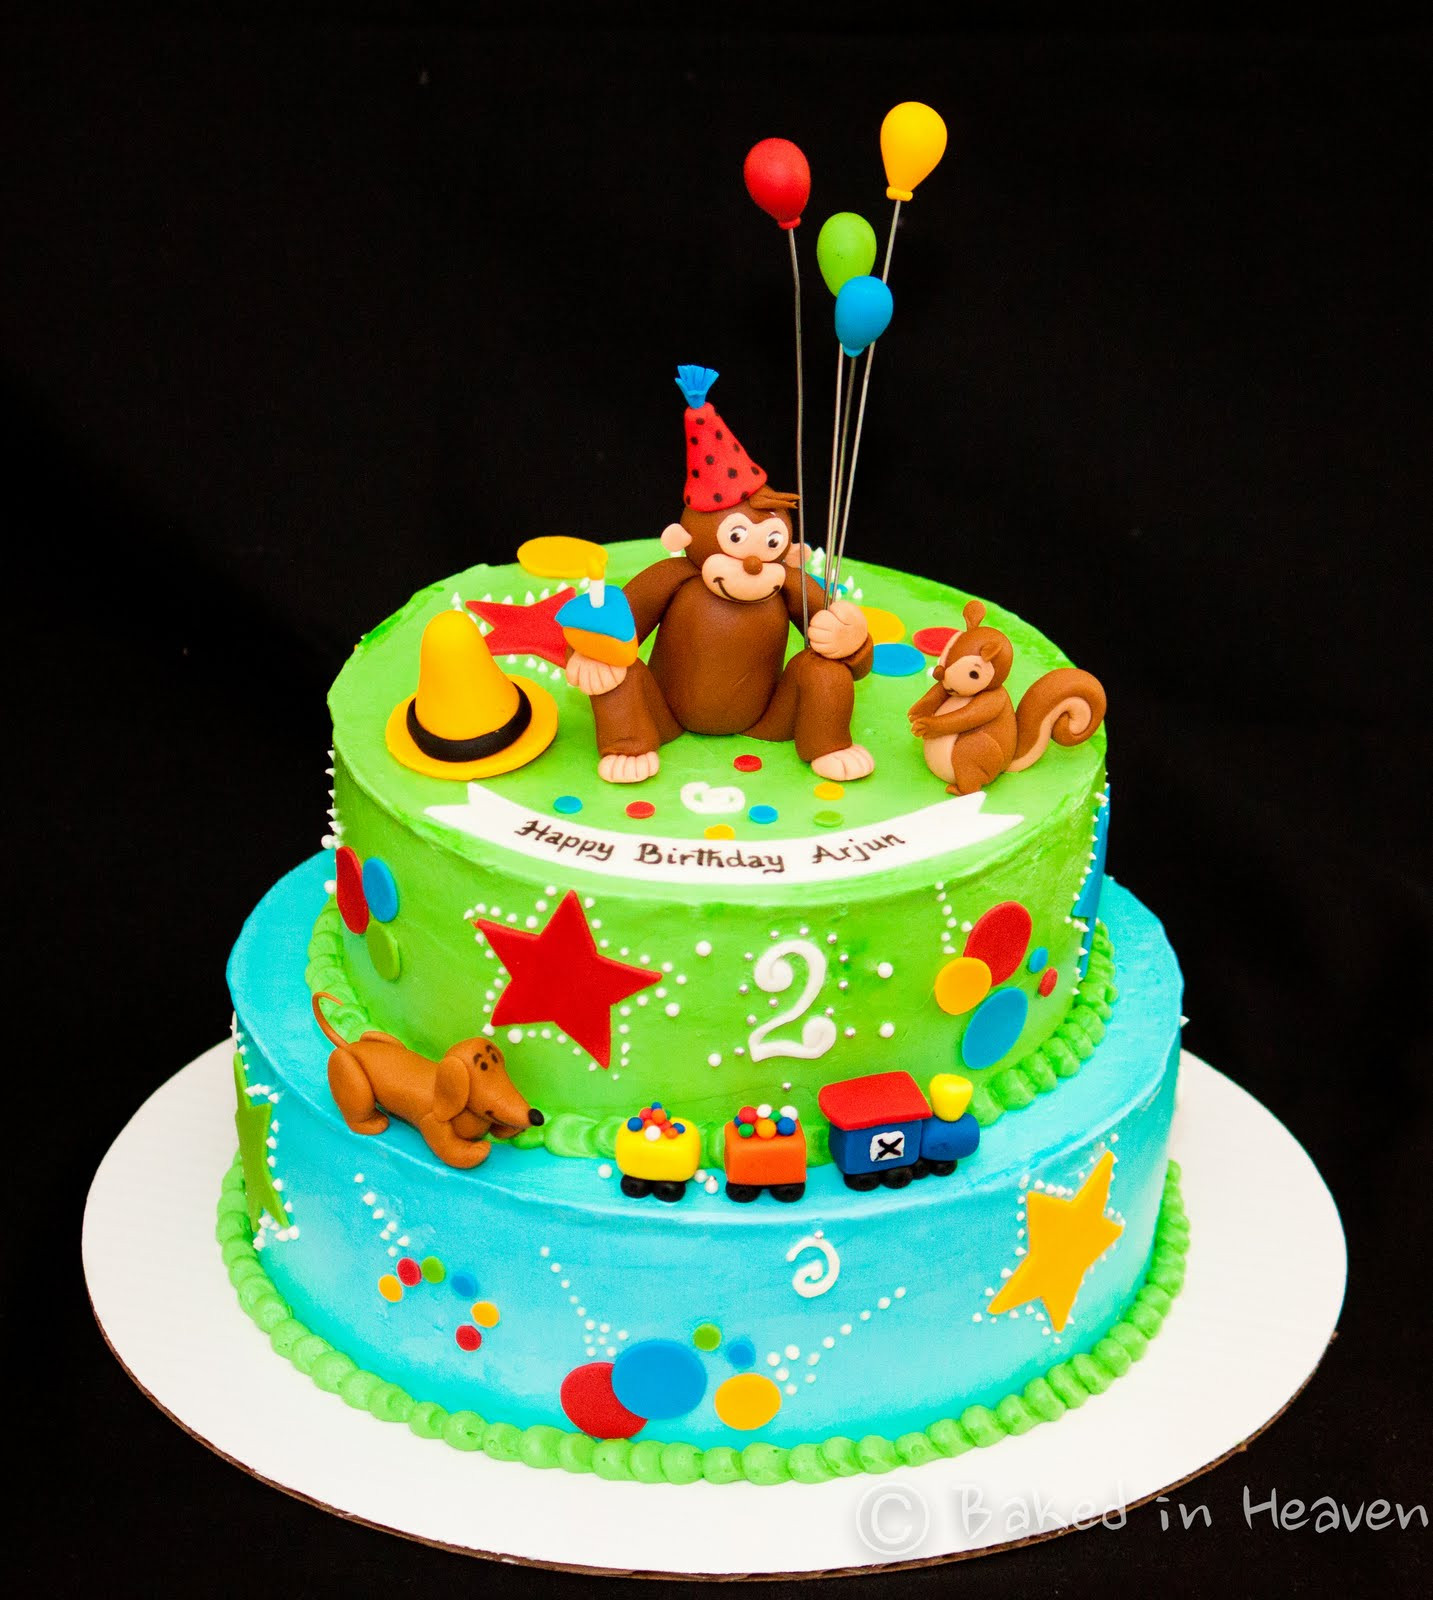 Curious George Birthday Cake
 Curious George cake